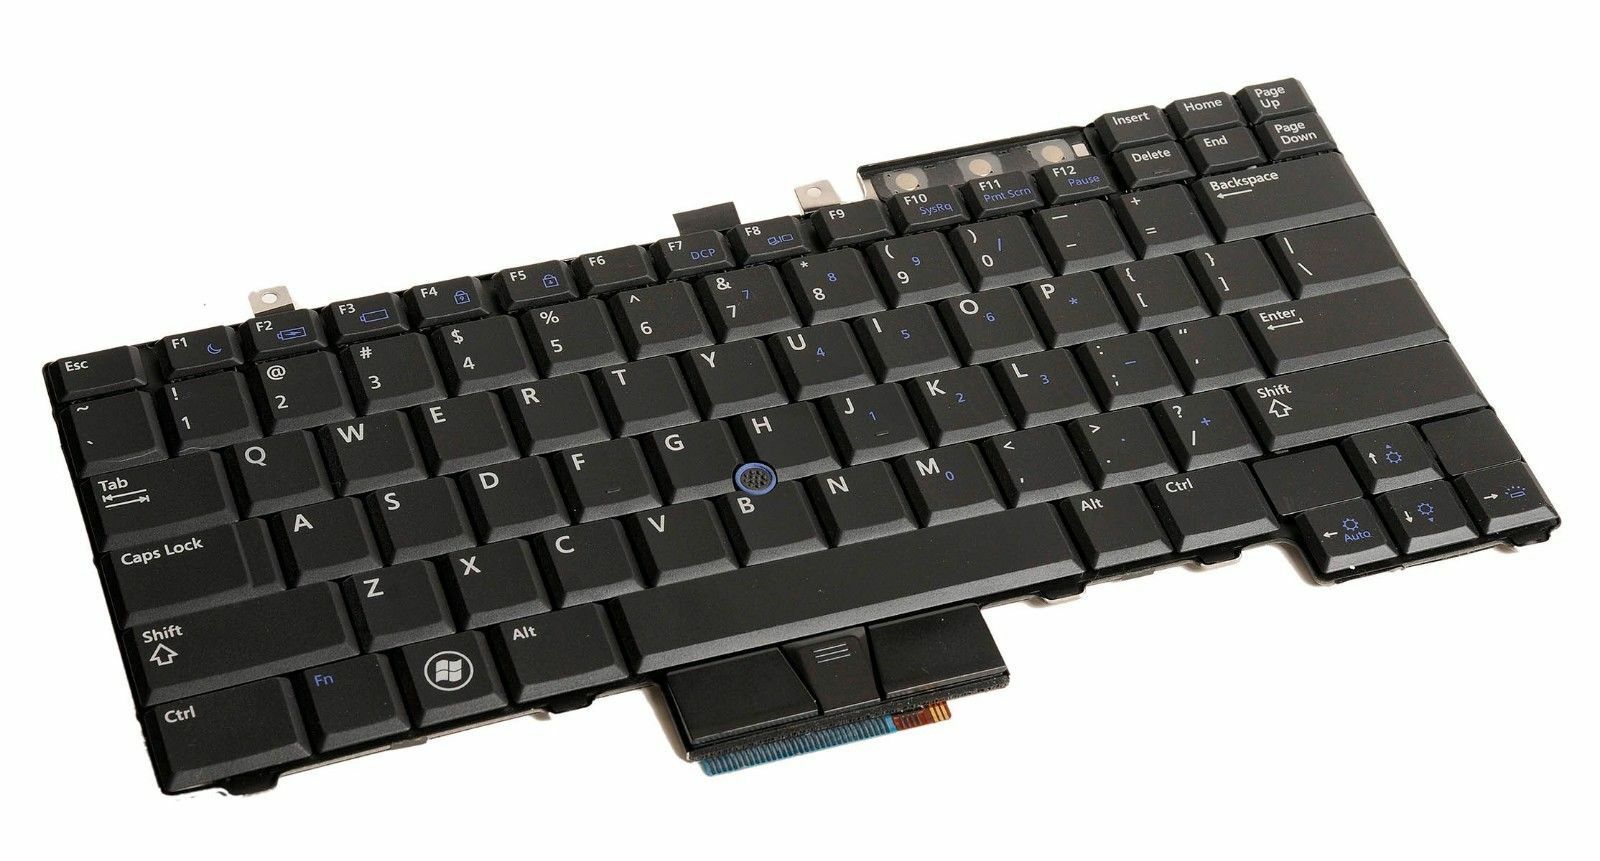 Dell Latitude E6400 E6410 E6500 E5400 E5410 E5500 E5510 Keyboard Uk717 Tested